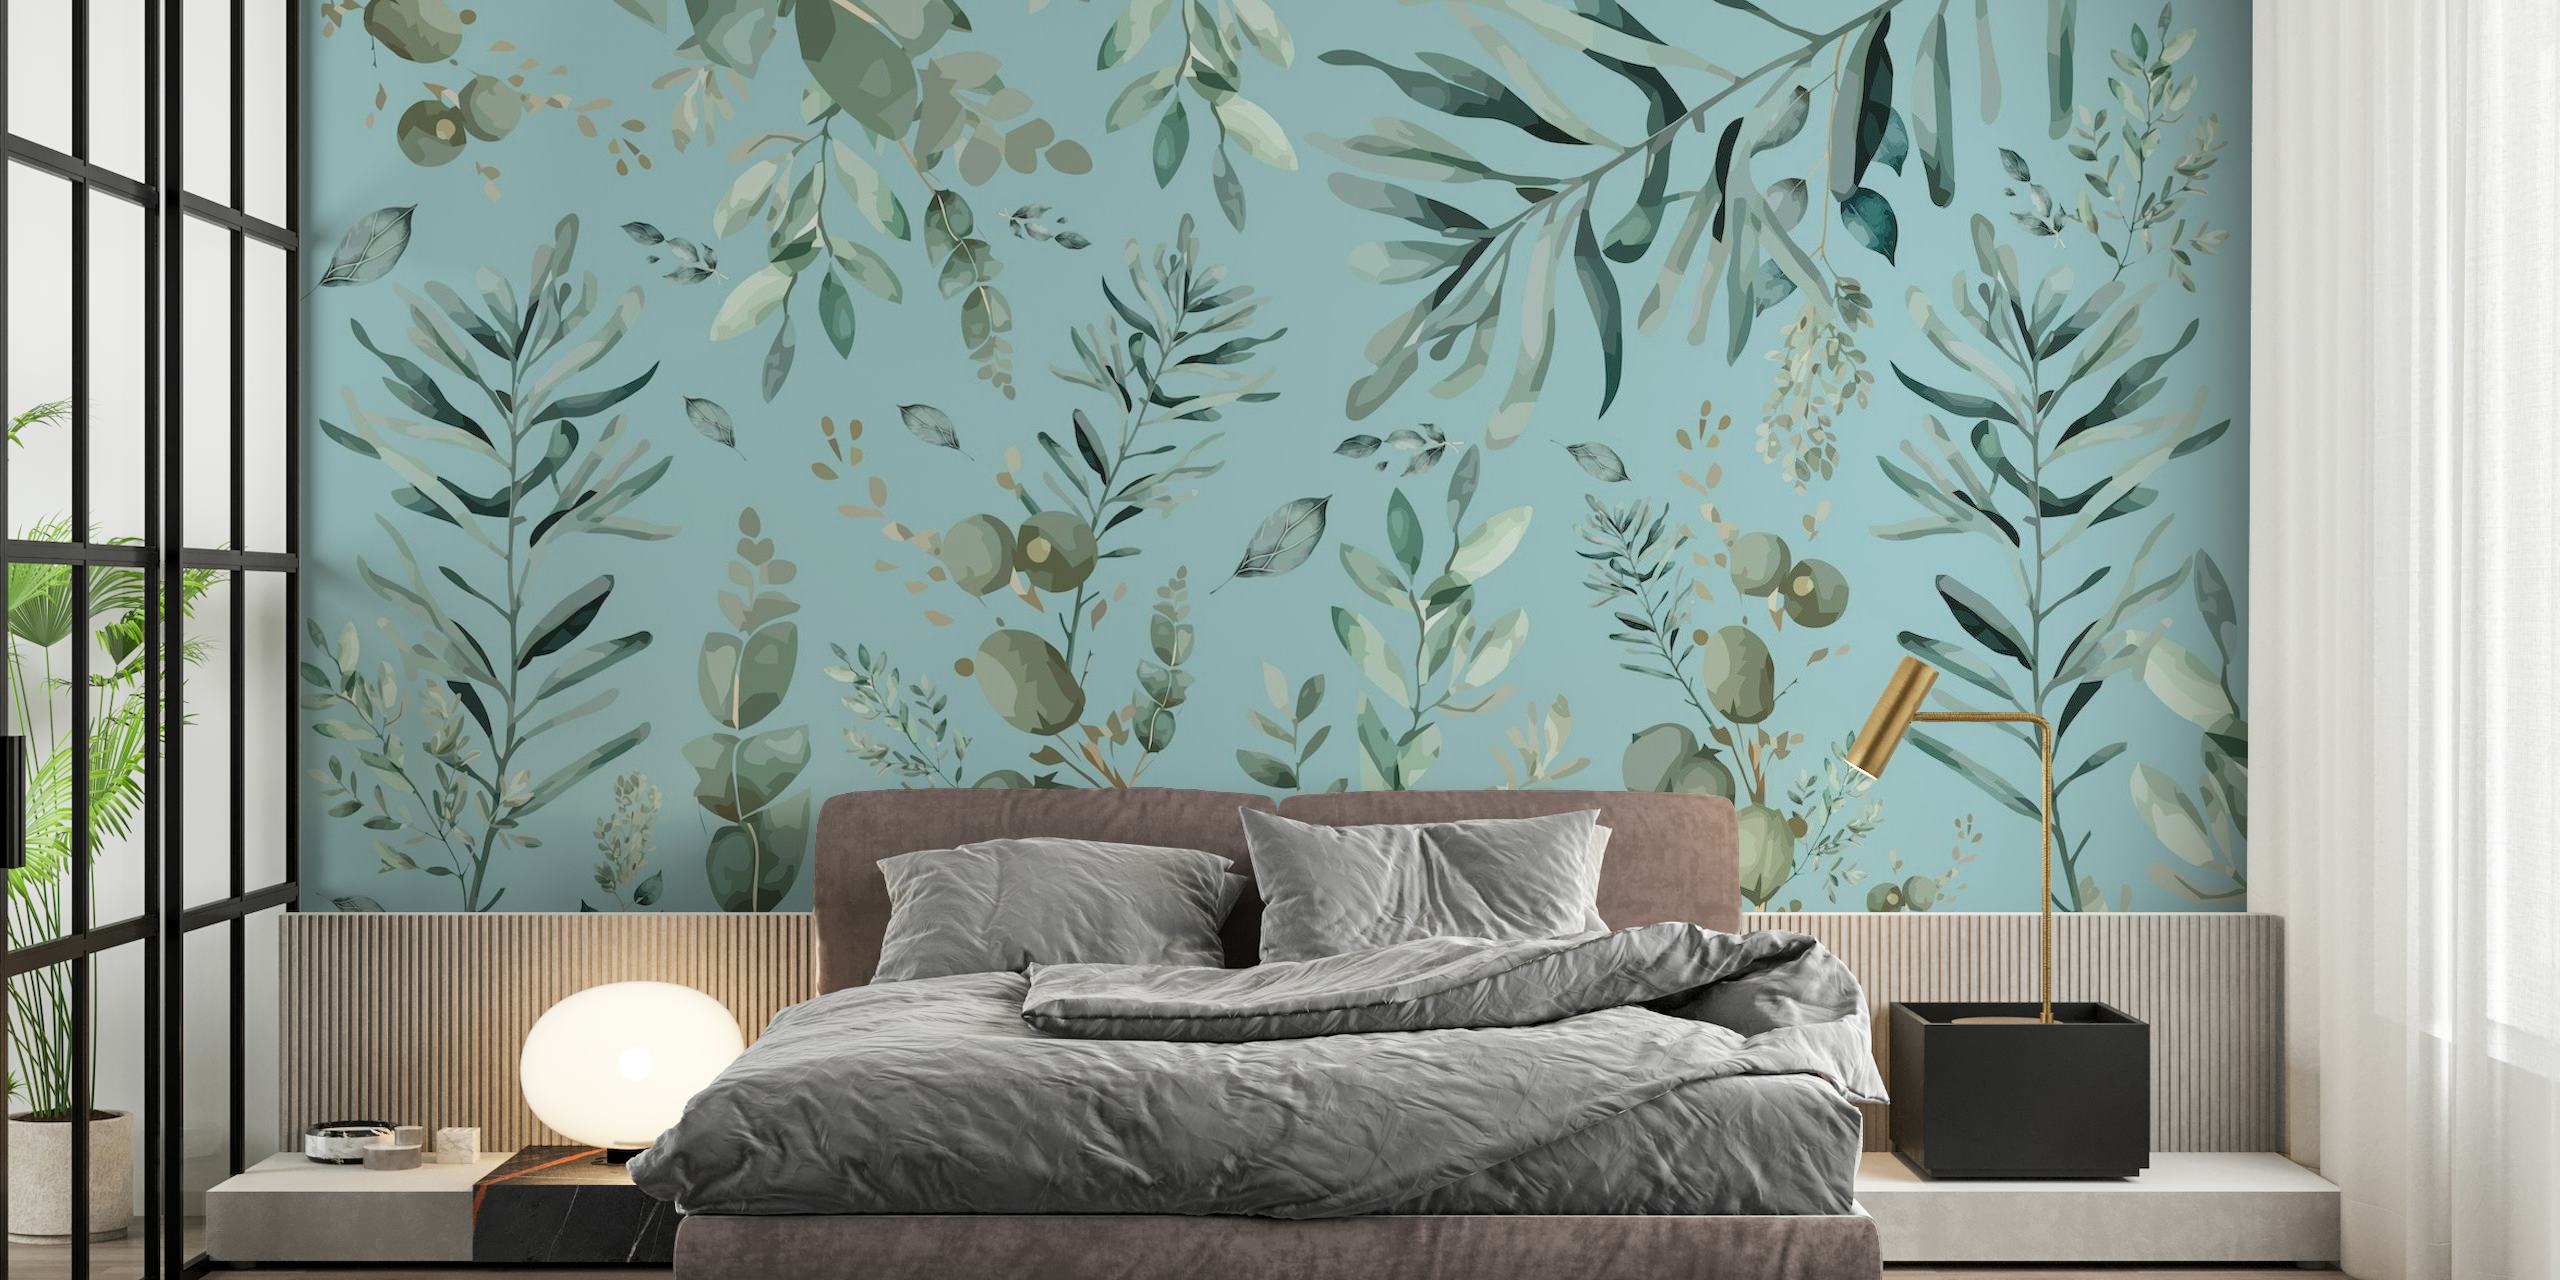 Wandbild „Botanic Leafs Blue“ mit goldenem botanischen Druck auf ruhigem blauen Hintergrund